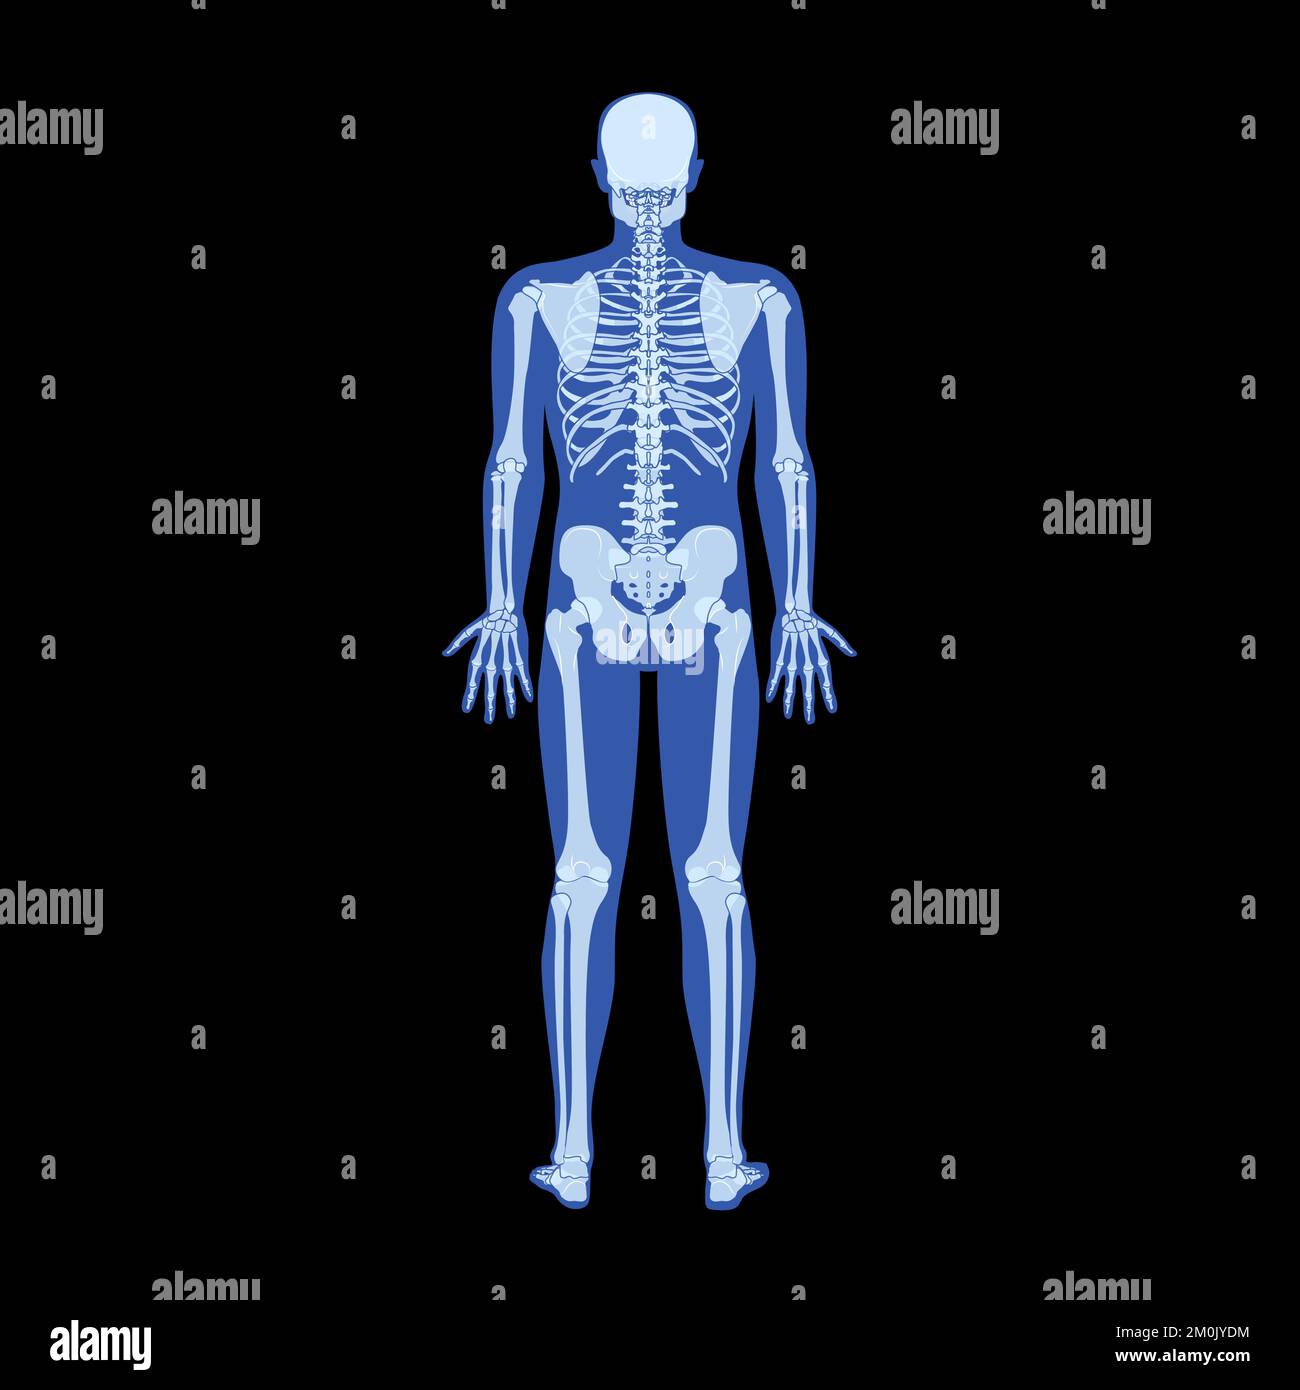 Squelette à rayons X corps humain - mains, jambes, coffres, têtes, vertèbres, Bassin, os adultes roentgen vue arrière. 3D Illustration vectorielle réaliste et plate de l'anatomie médicale isolée sur fond noir Illustration de Vecteur